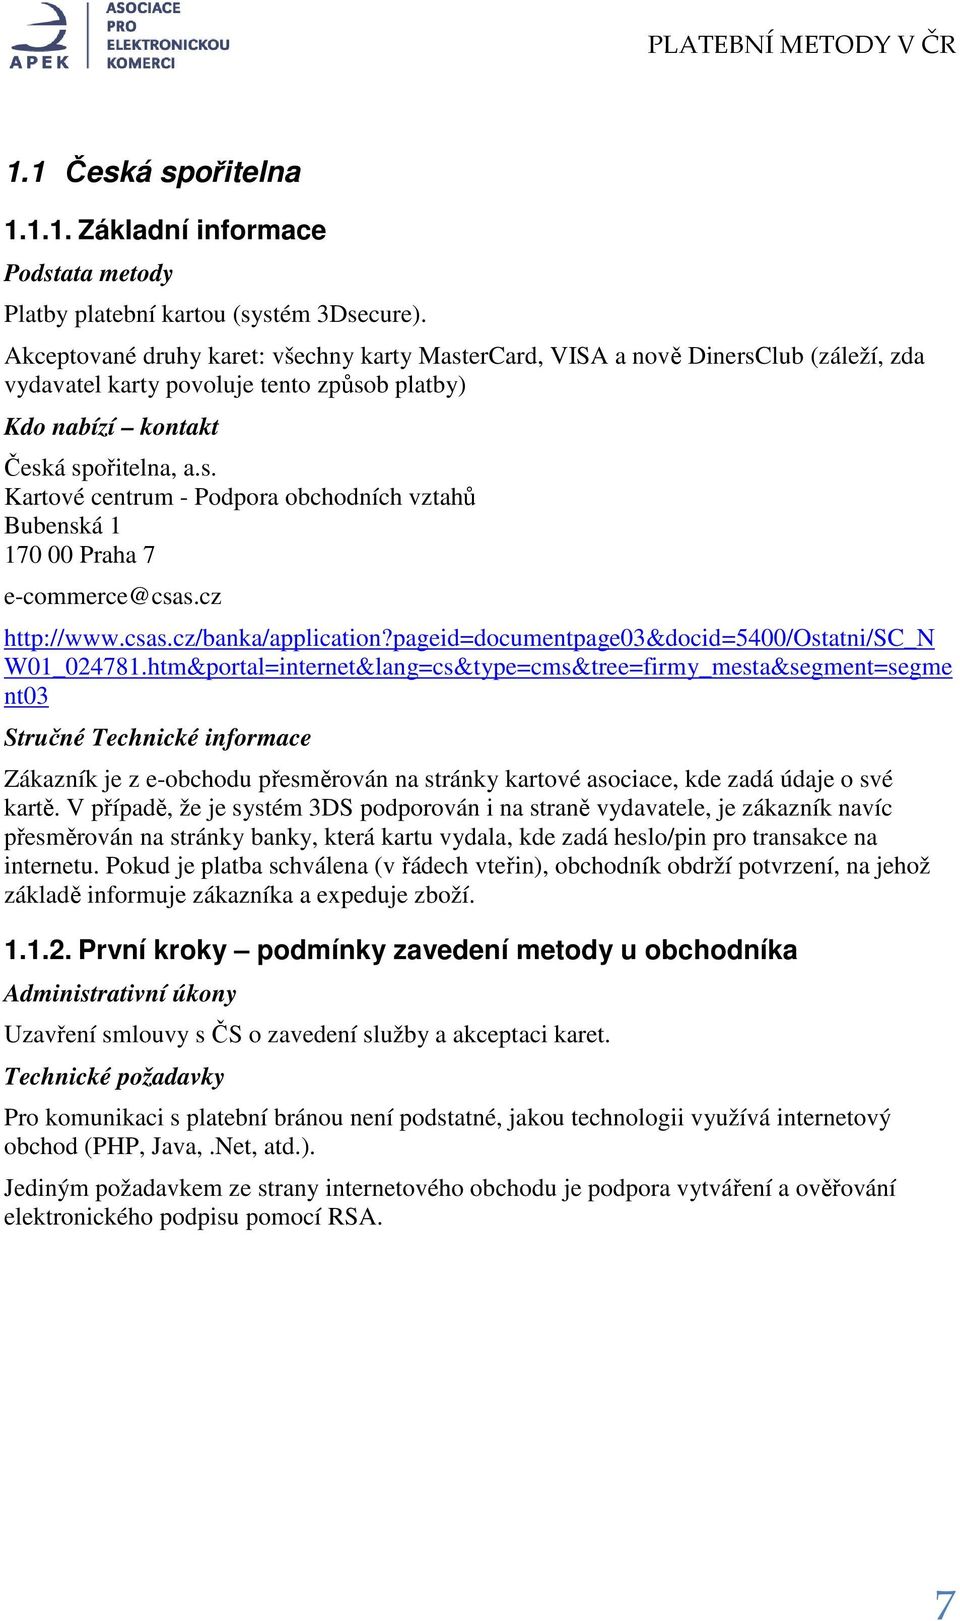 cz http://www.csas.cz/banka/application?pageid=documentpage03&docid=5400/ostatni/sc_n W01_024781.